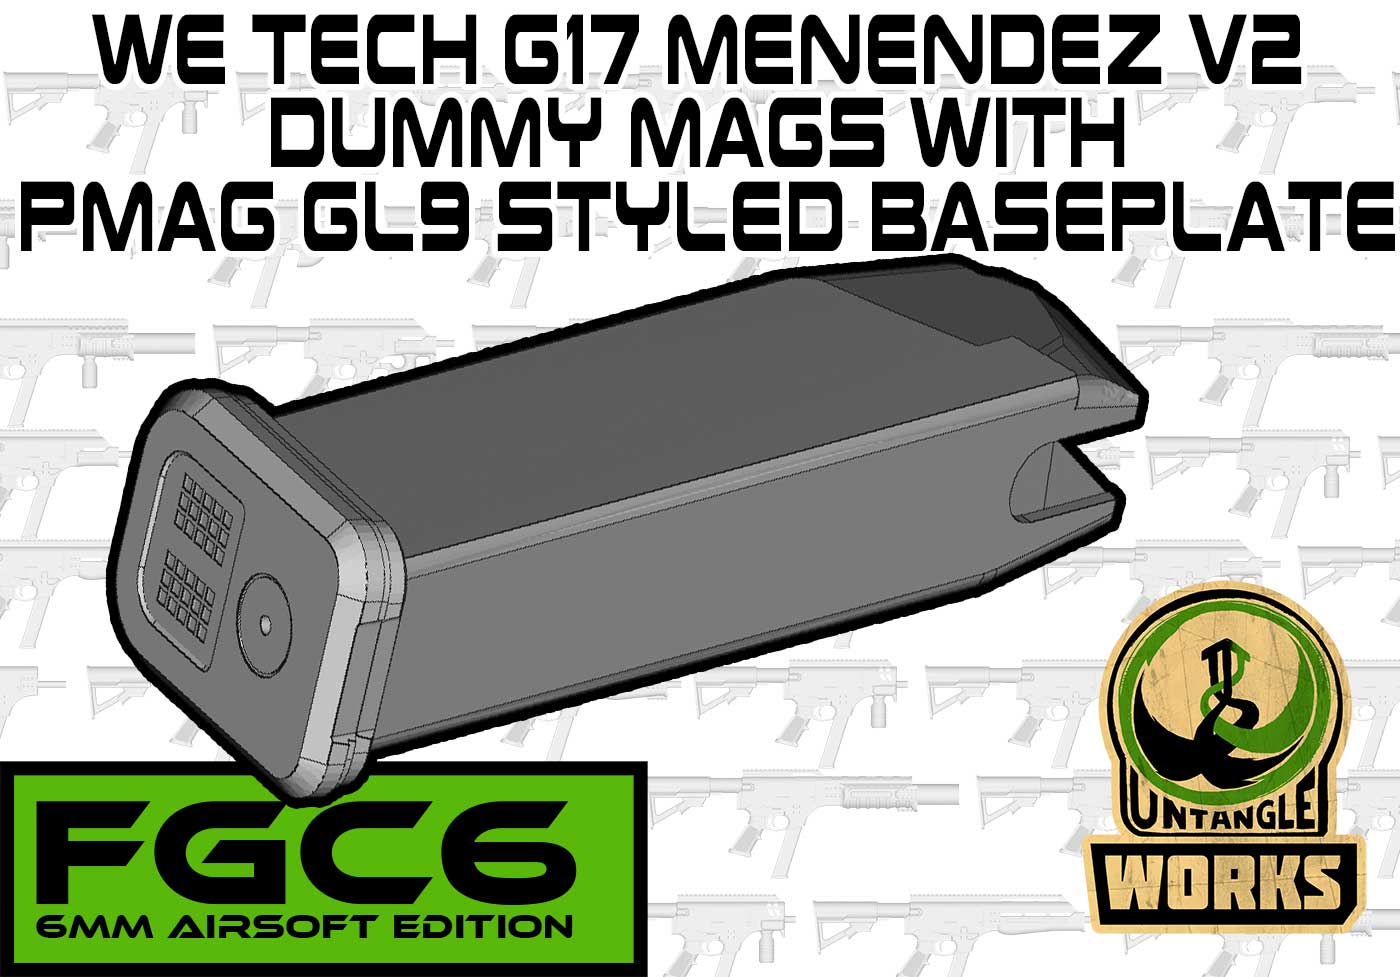 Menendez v2 Dummy mag for GGB airsoft or FGC-6  GL9 version